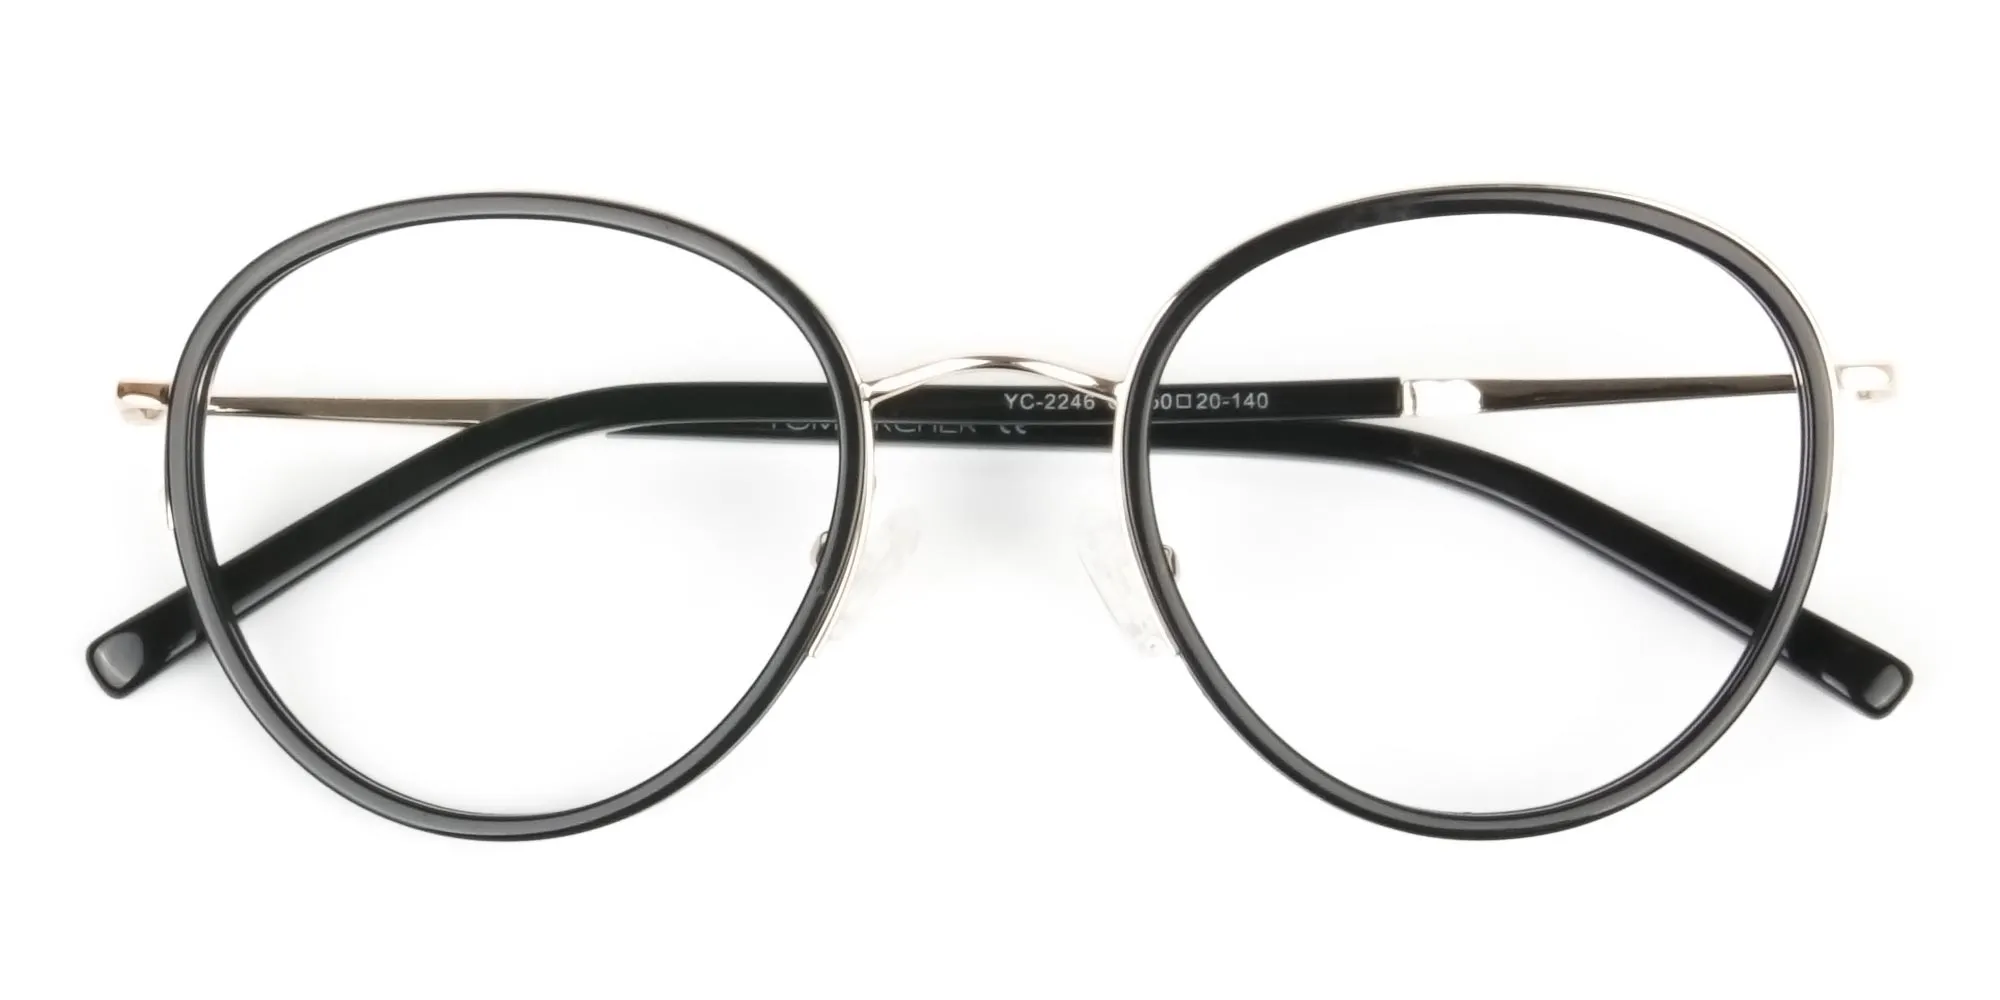 Retro Black & Silver Circular Glasses - 2